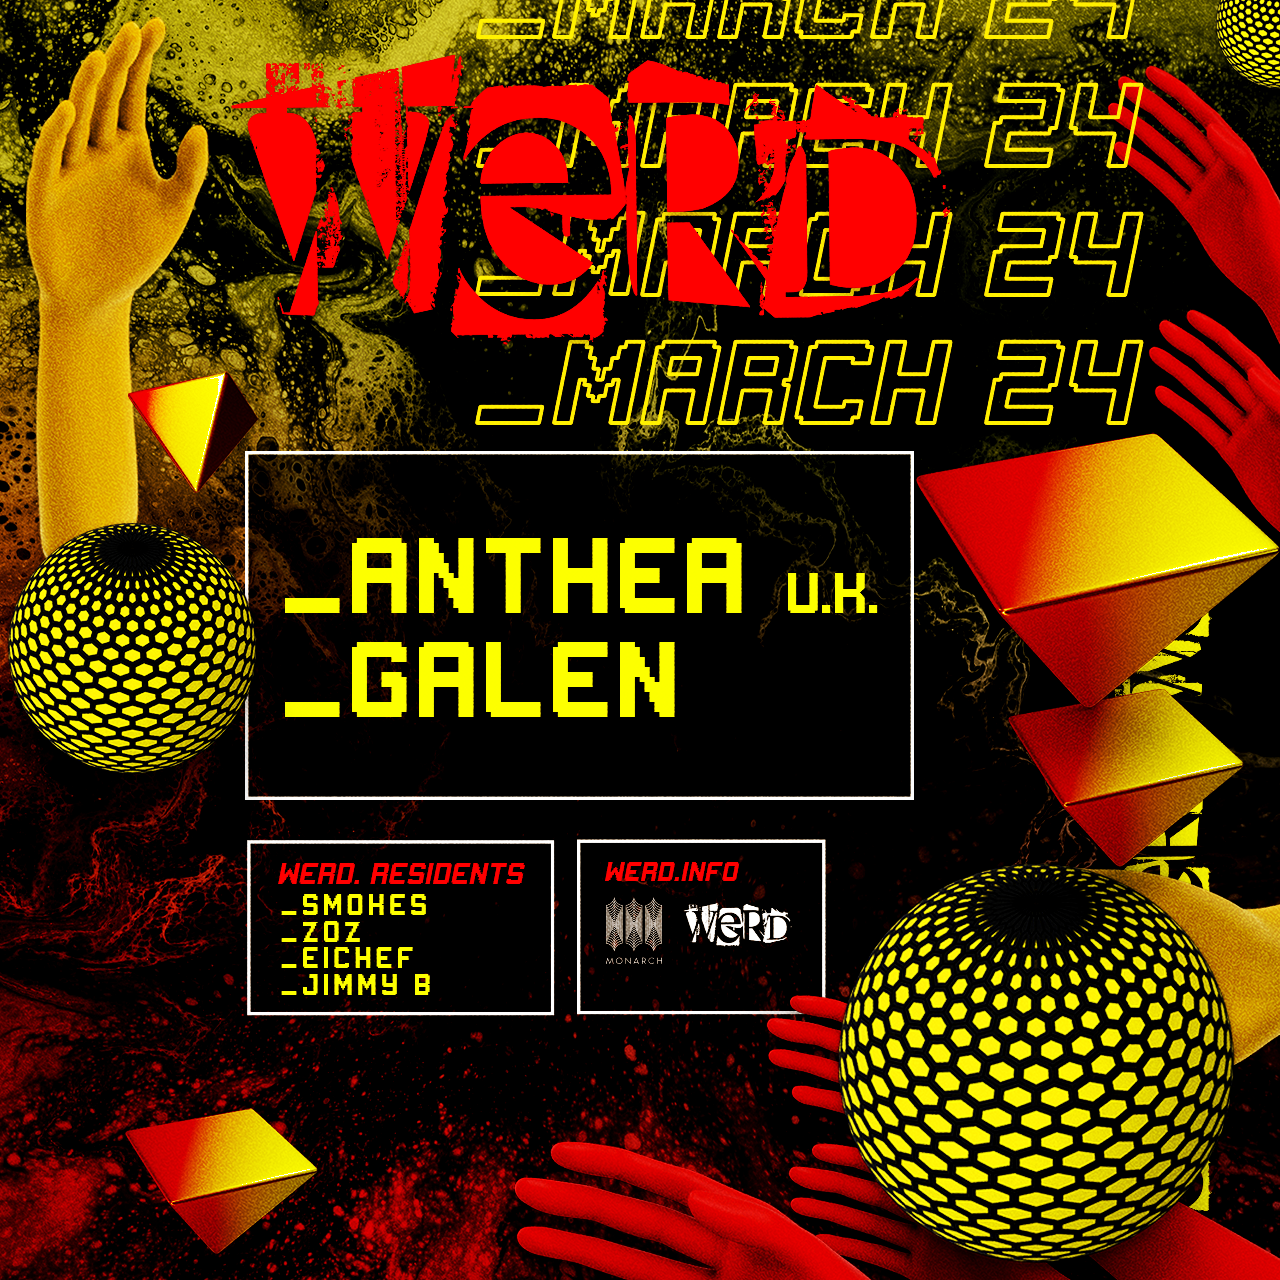 WERD. with Anthea (UK), Galen, WERD DJS - フライヤー裏